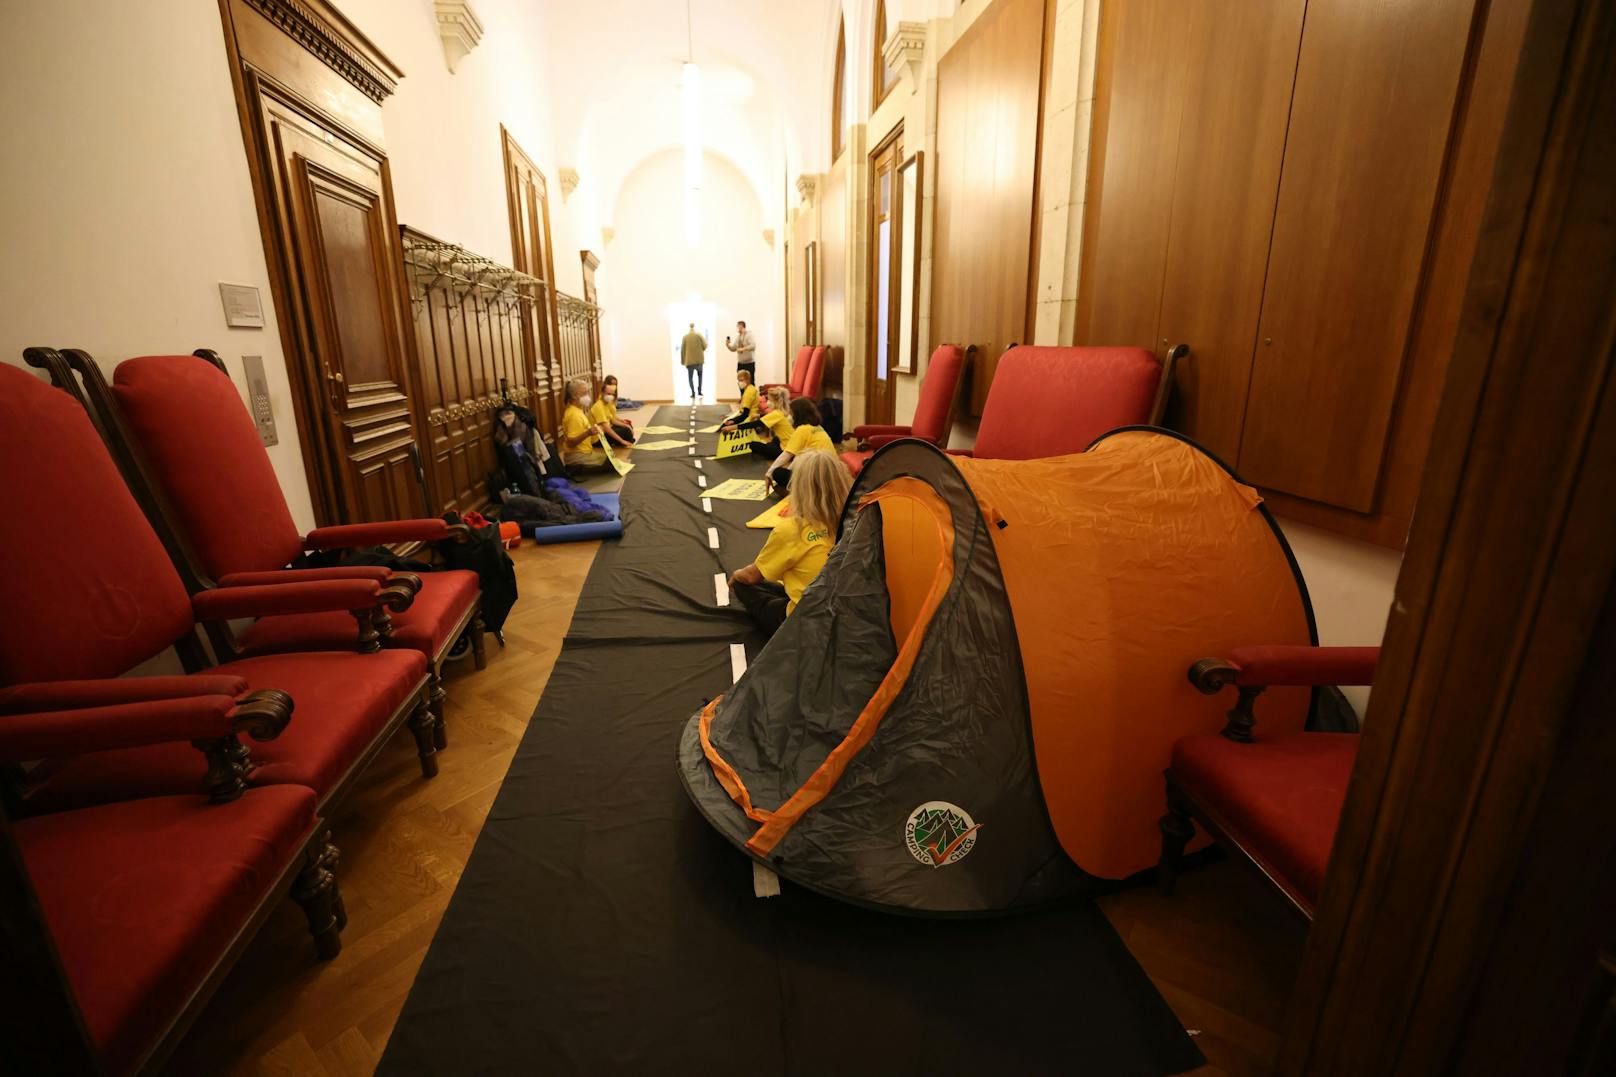 Die nehmen das gelassen und bereiten sich mit Zelt und Schlafsäcken schon auf eine Übernachtung im Rathaus vor.